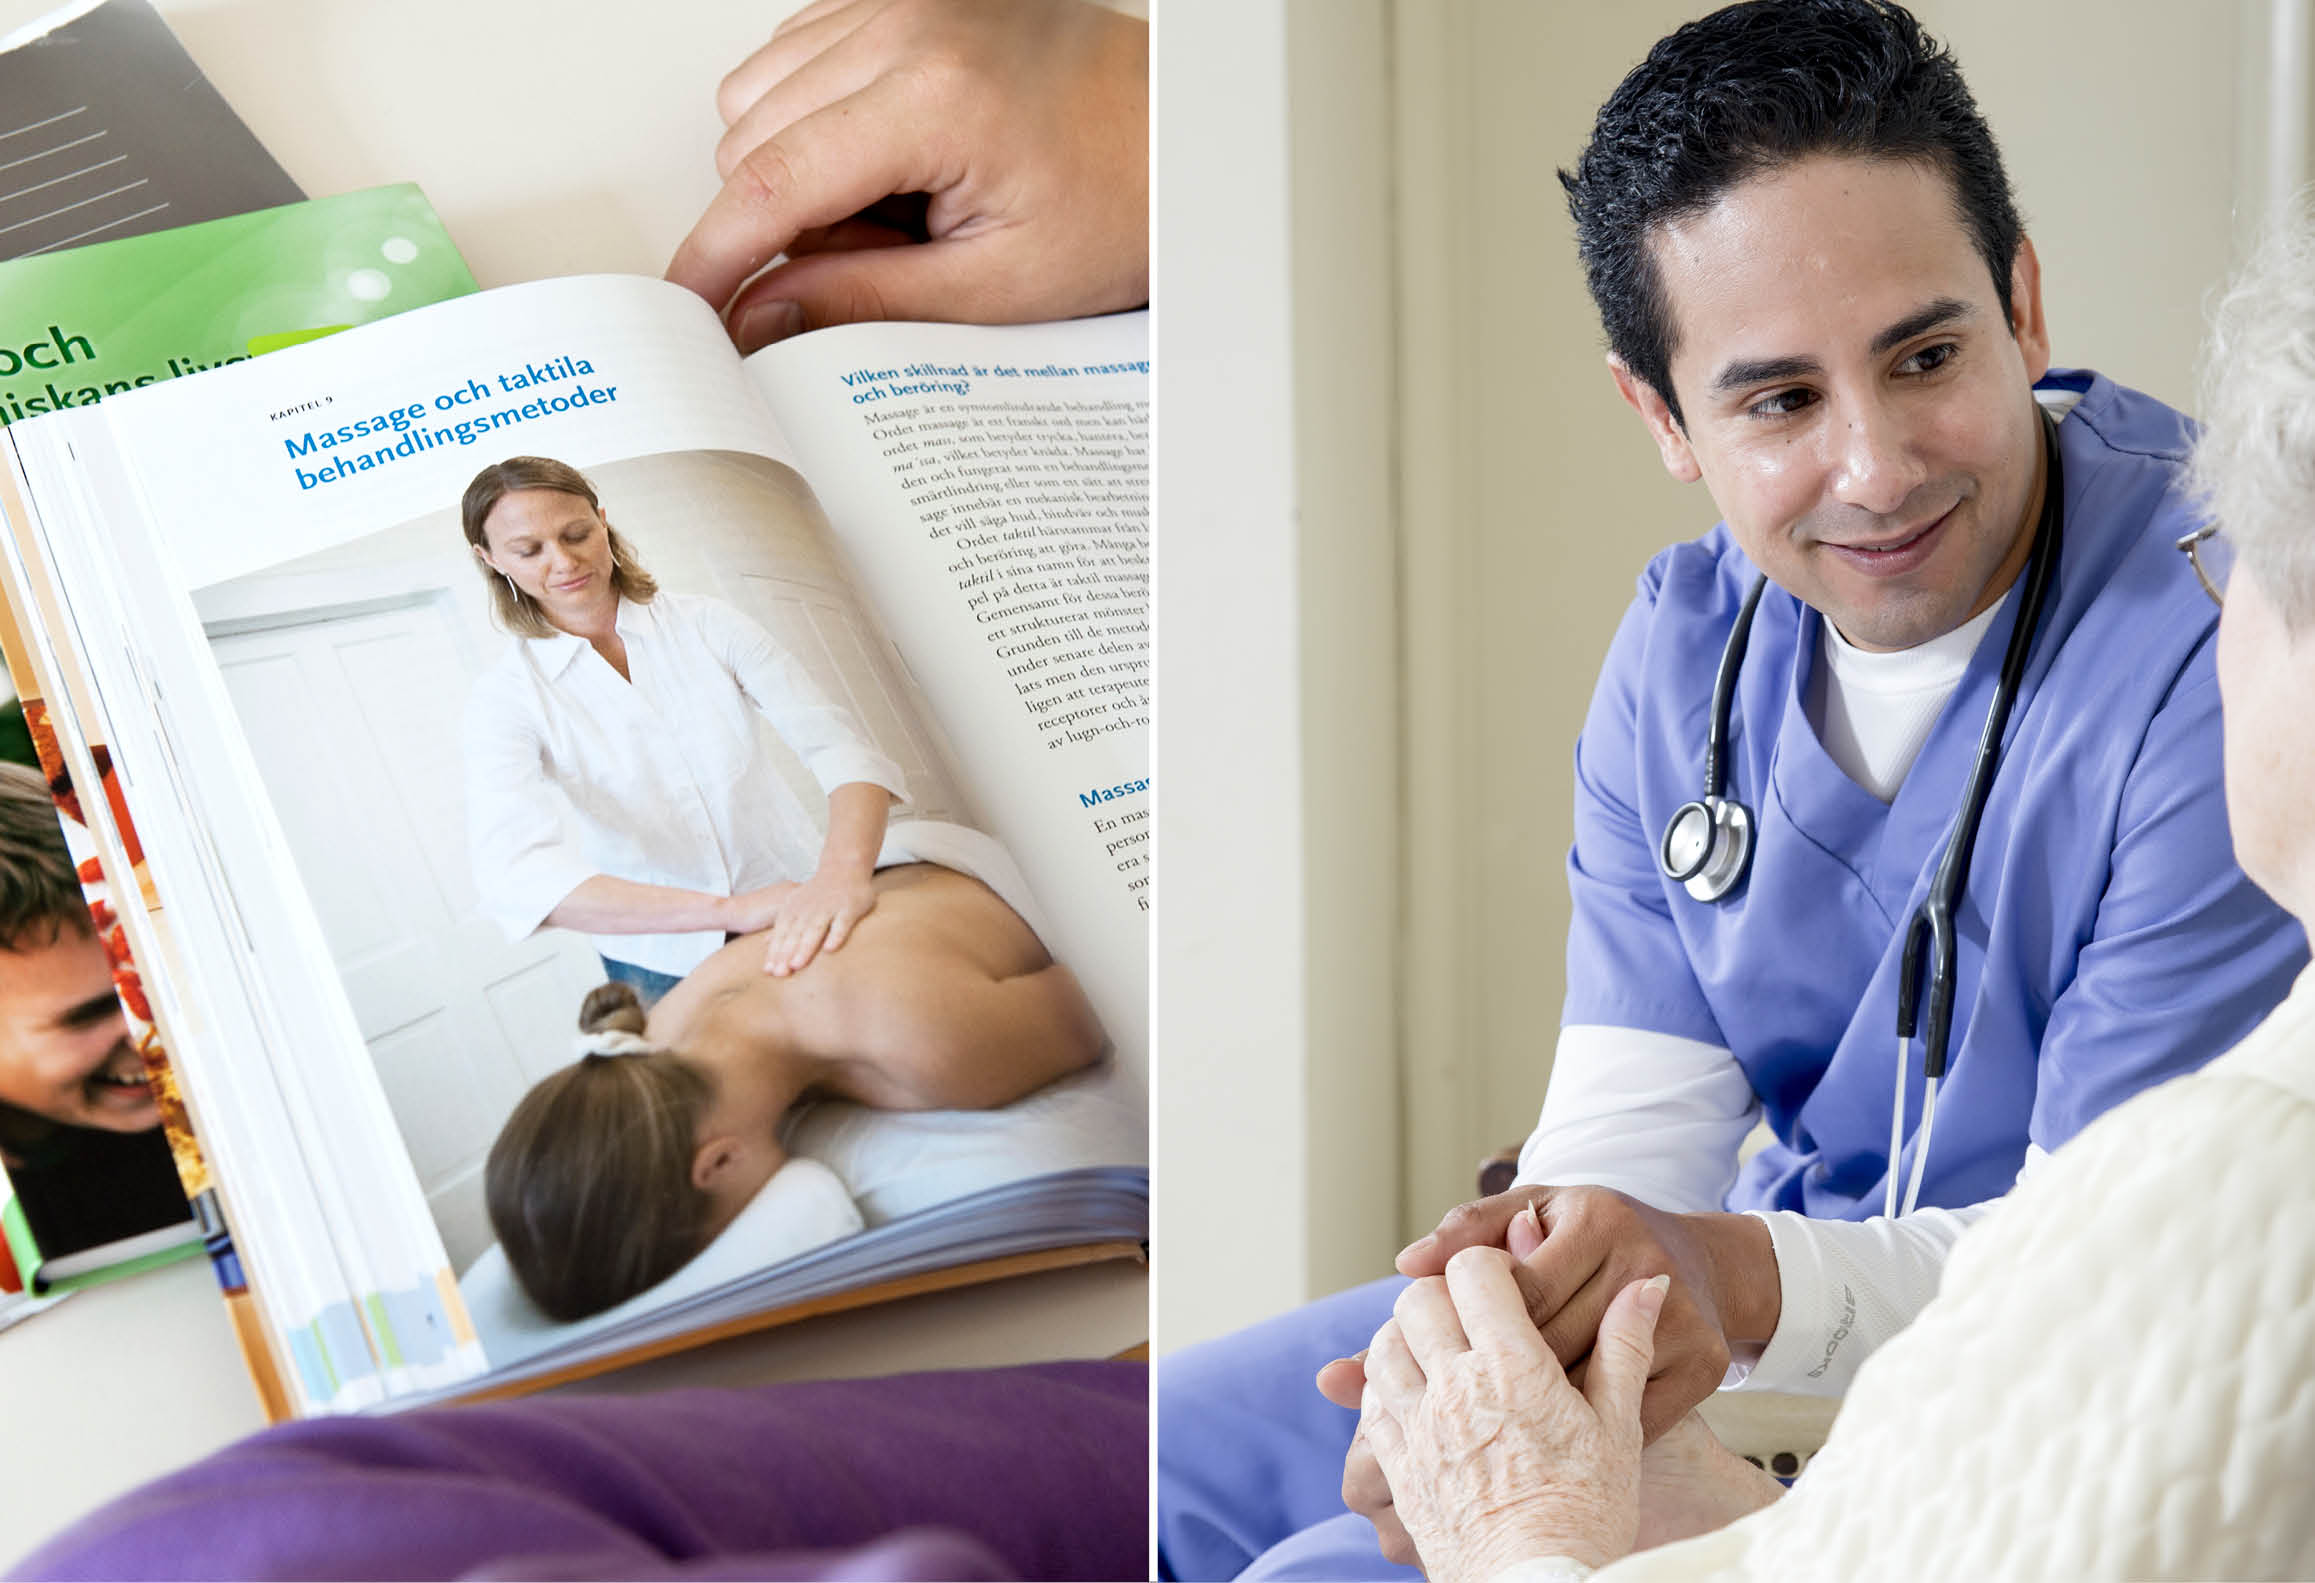 Vänster bild visar skolbok inom vård- och omsorg. Höger bild visar skötare på äldreboende